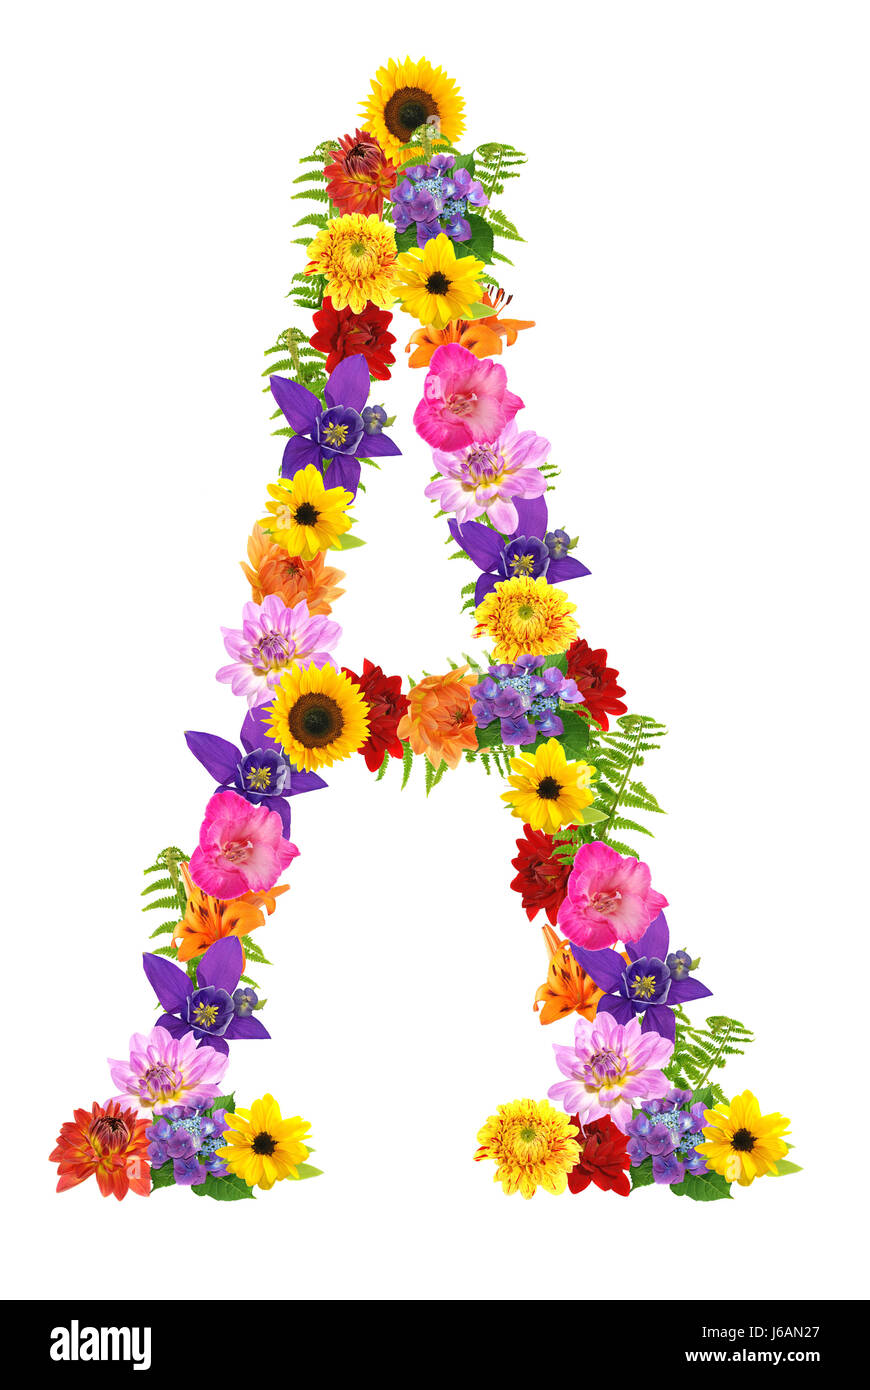 Blume Blumen Pflanze Buchstaben Buchstaben Alphabet farbig bunt wunderschön  Stockfotografie - Alamy